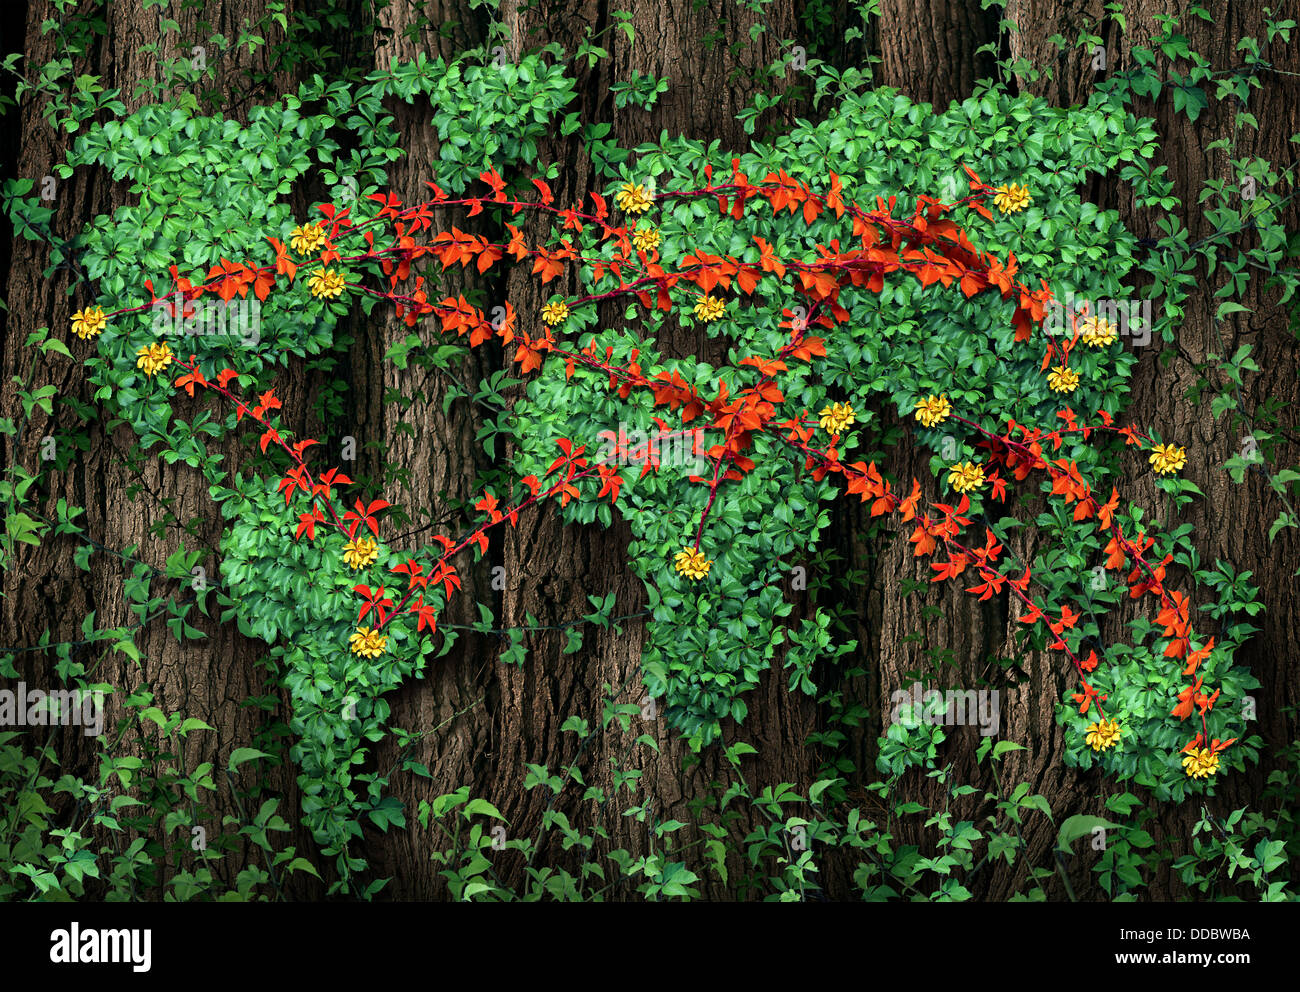 Erdverbindungen und globale Kommunikation Business-Konzept mit einer Gruppe von roten Reben geprägt als ein verbundenes Netzwerk über einer grünen Ranke in Form der Weltkarte, befestigt an einem Baum Wald wächst. Stockfoto